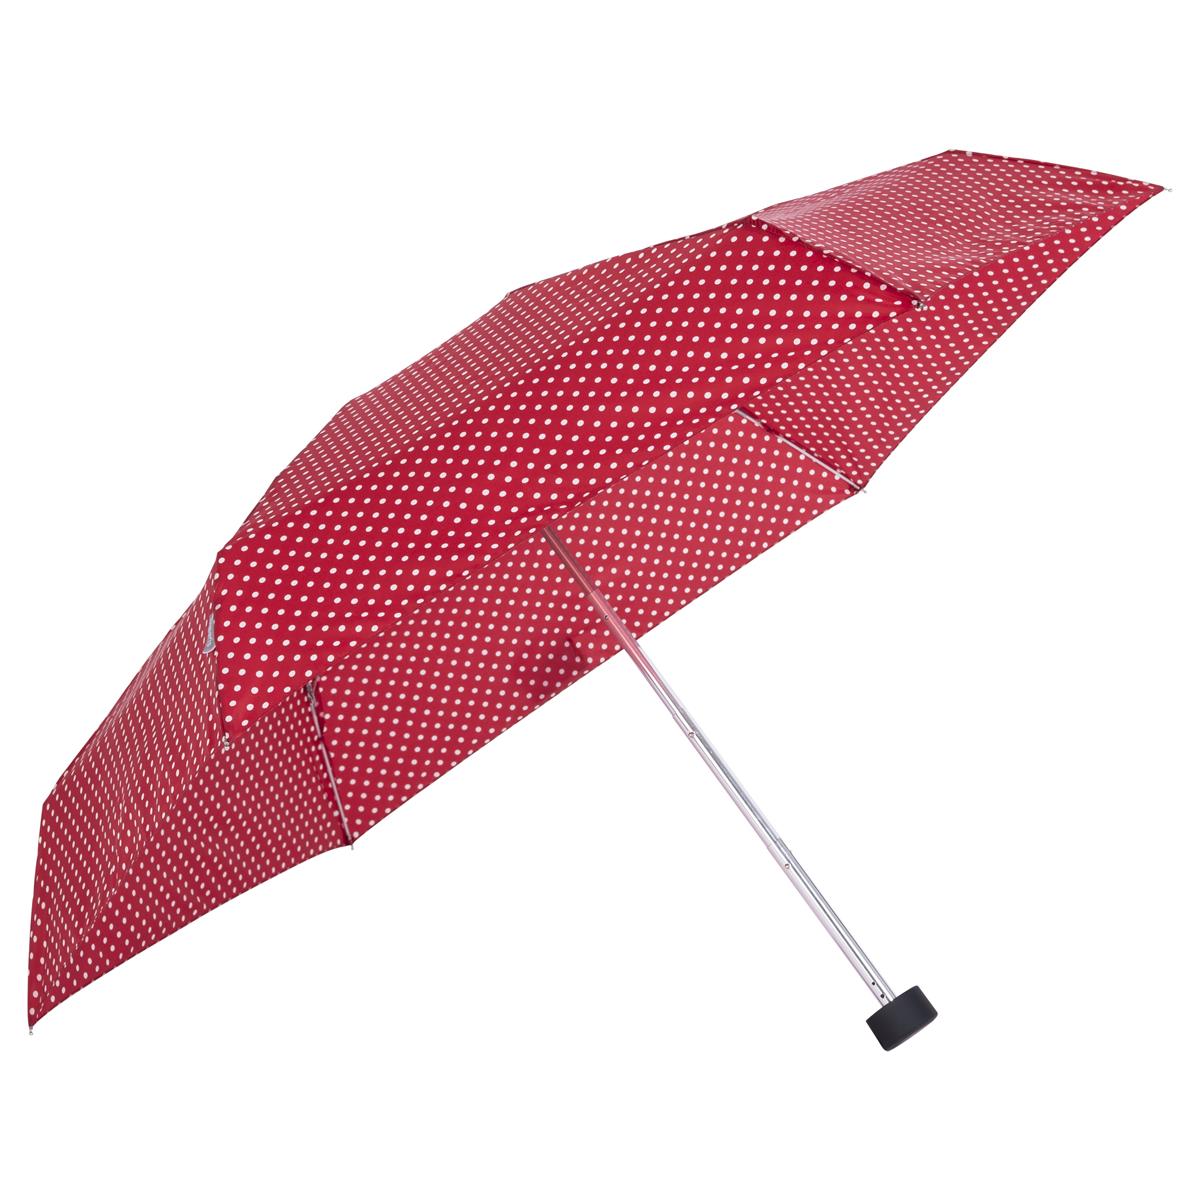 Tambrella mini rot